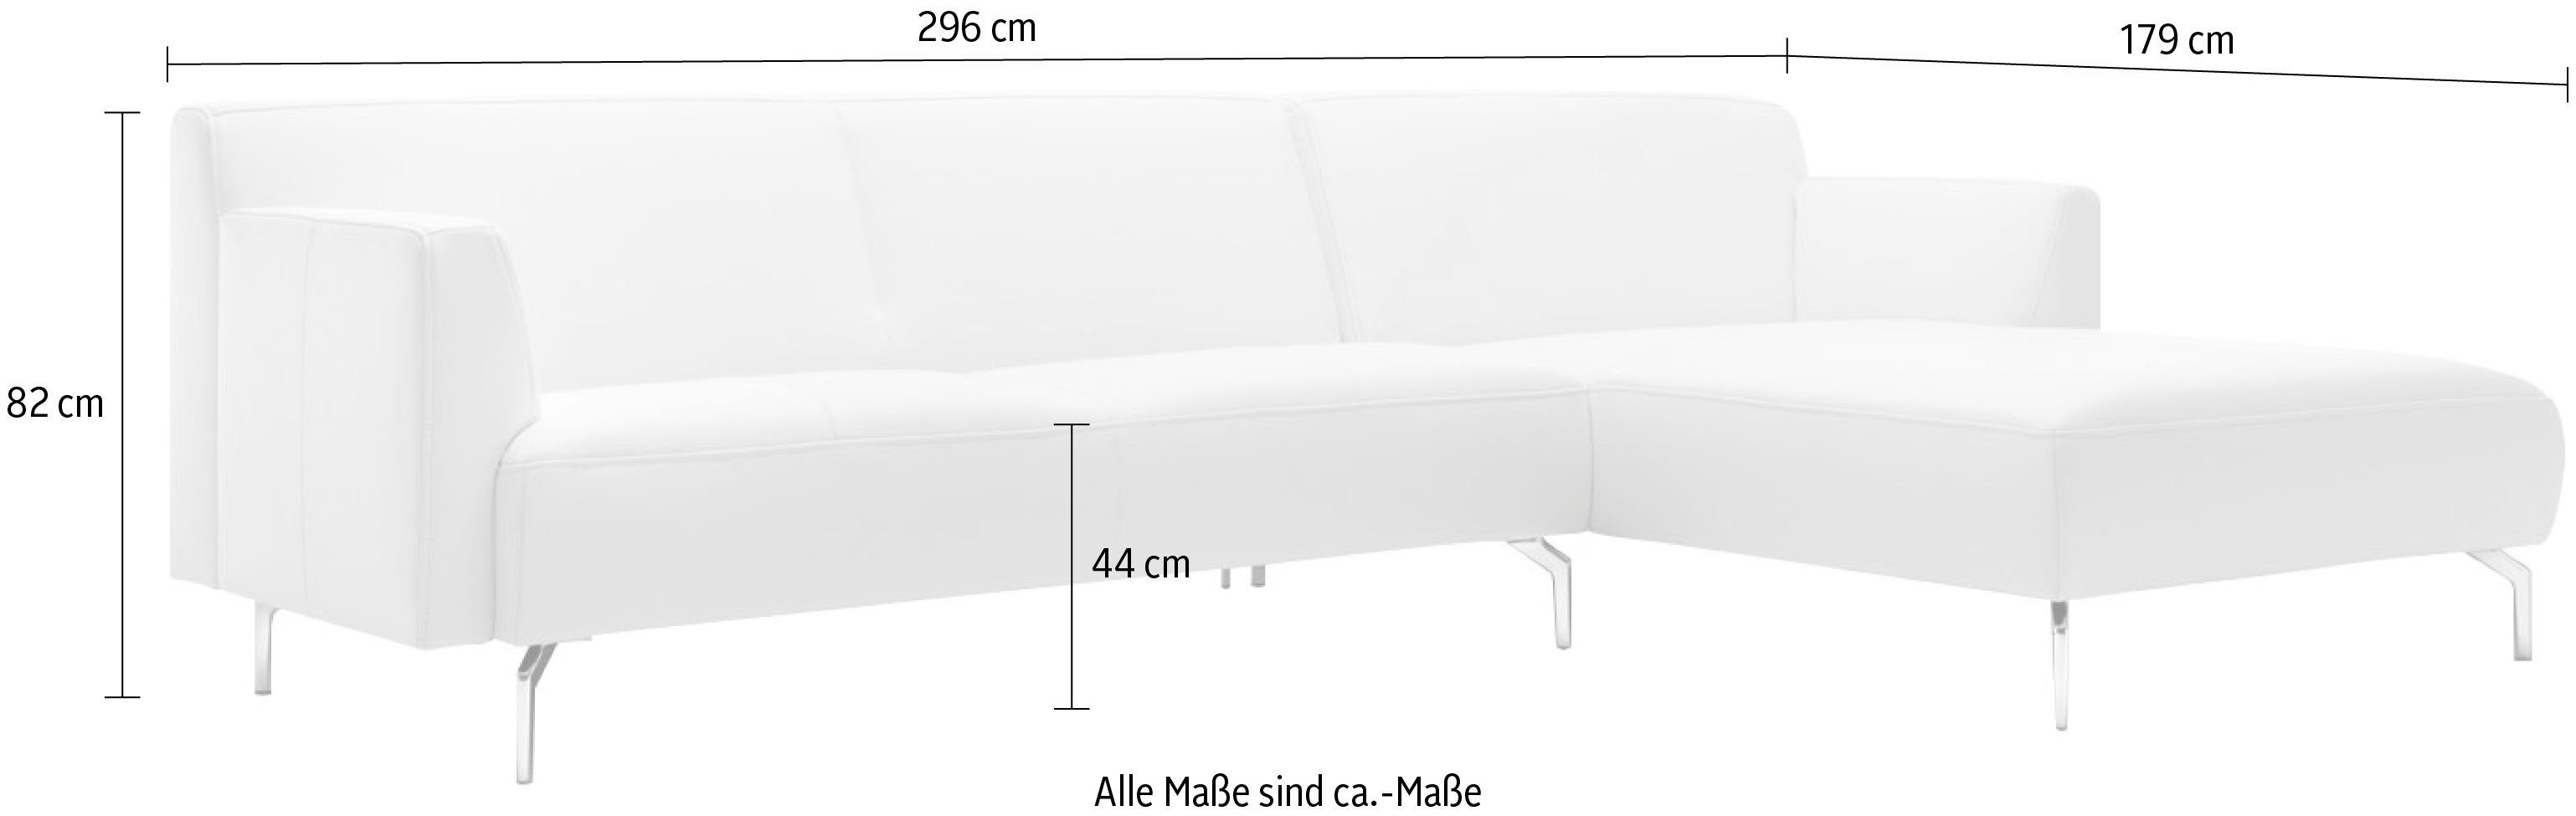 schwereloser 296 sofa minimalistischer, in hs.446, Breite Ecksofa hülsta Optik, cm